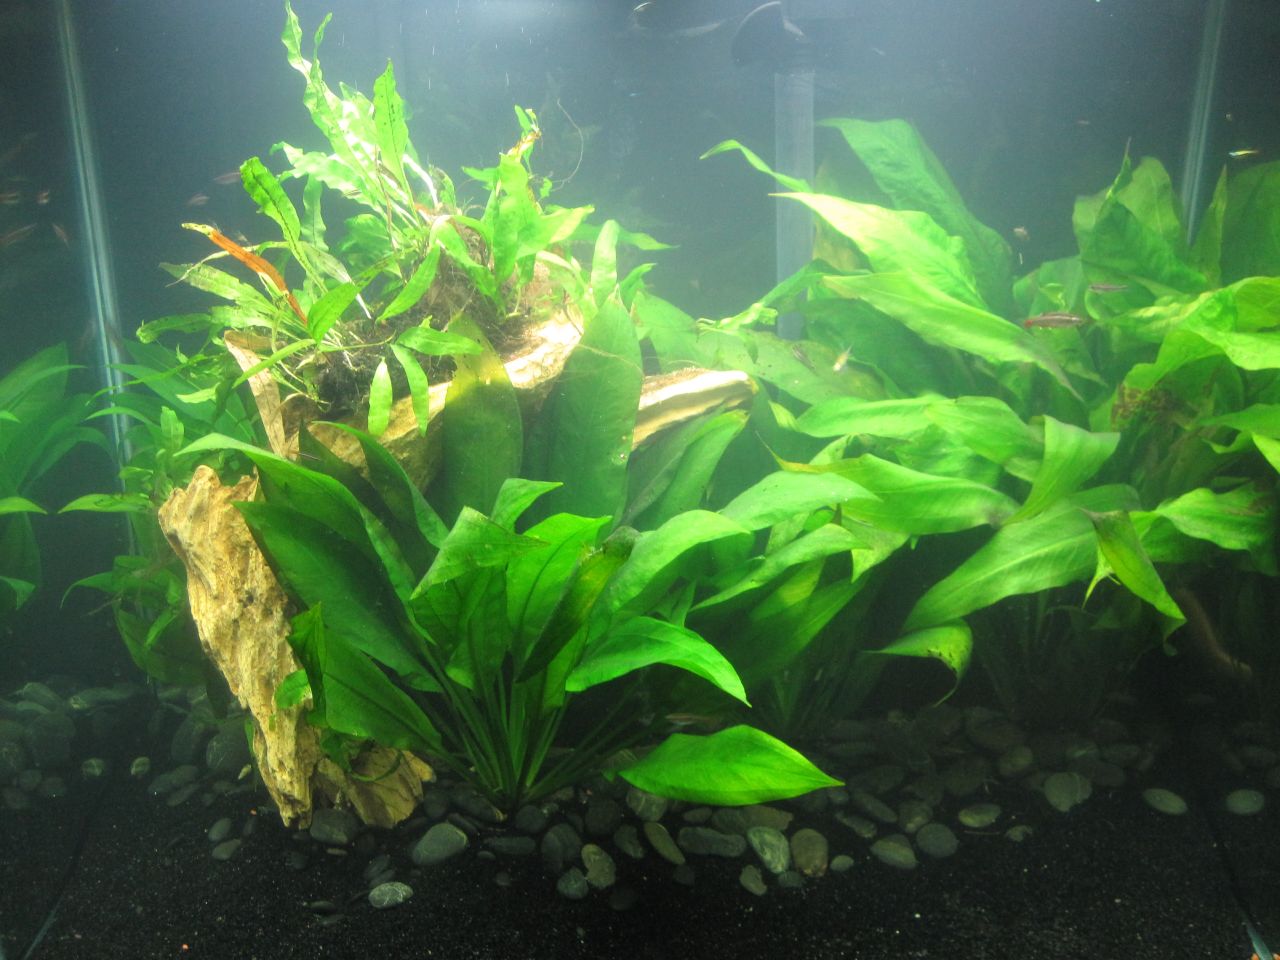 Sword plants in aquarium